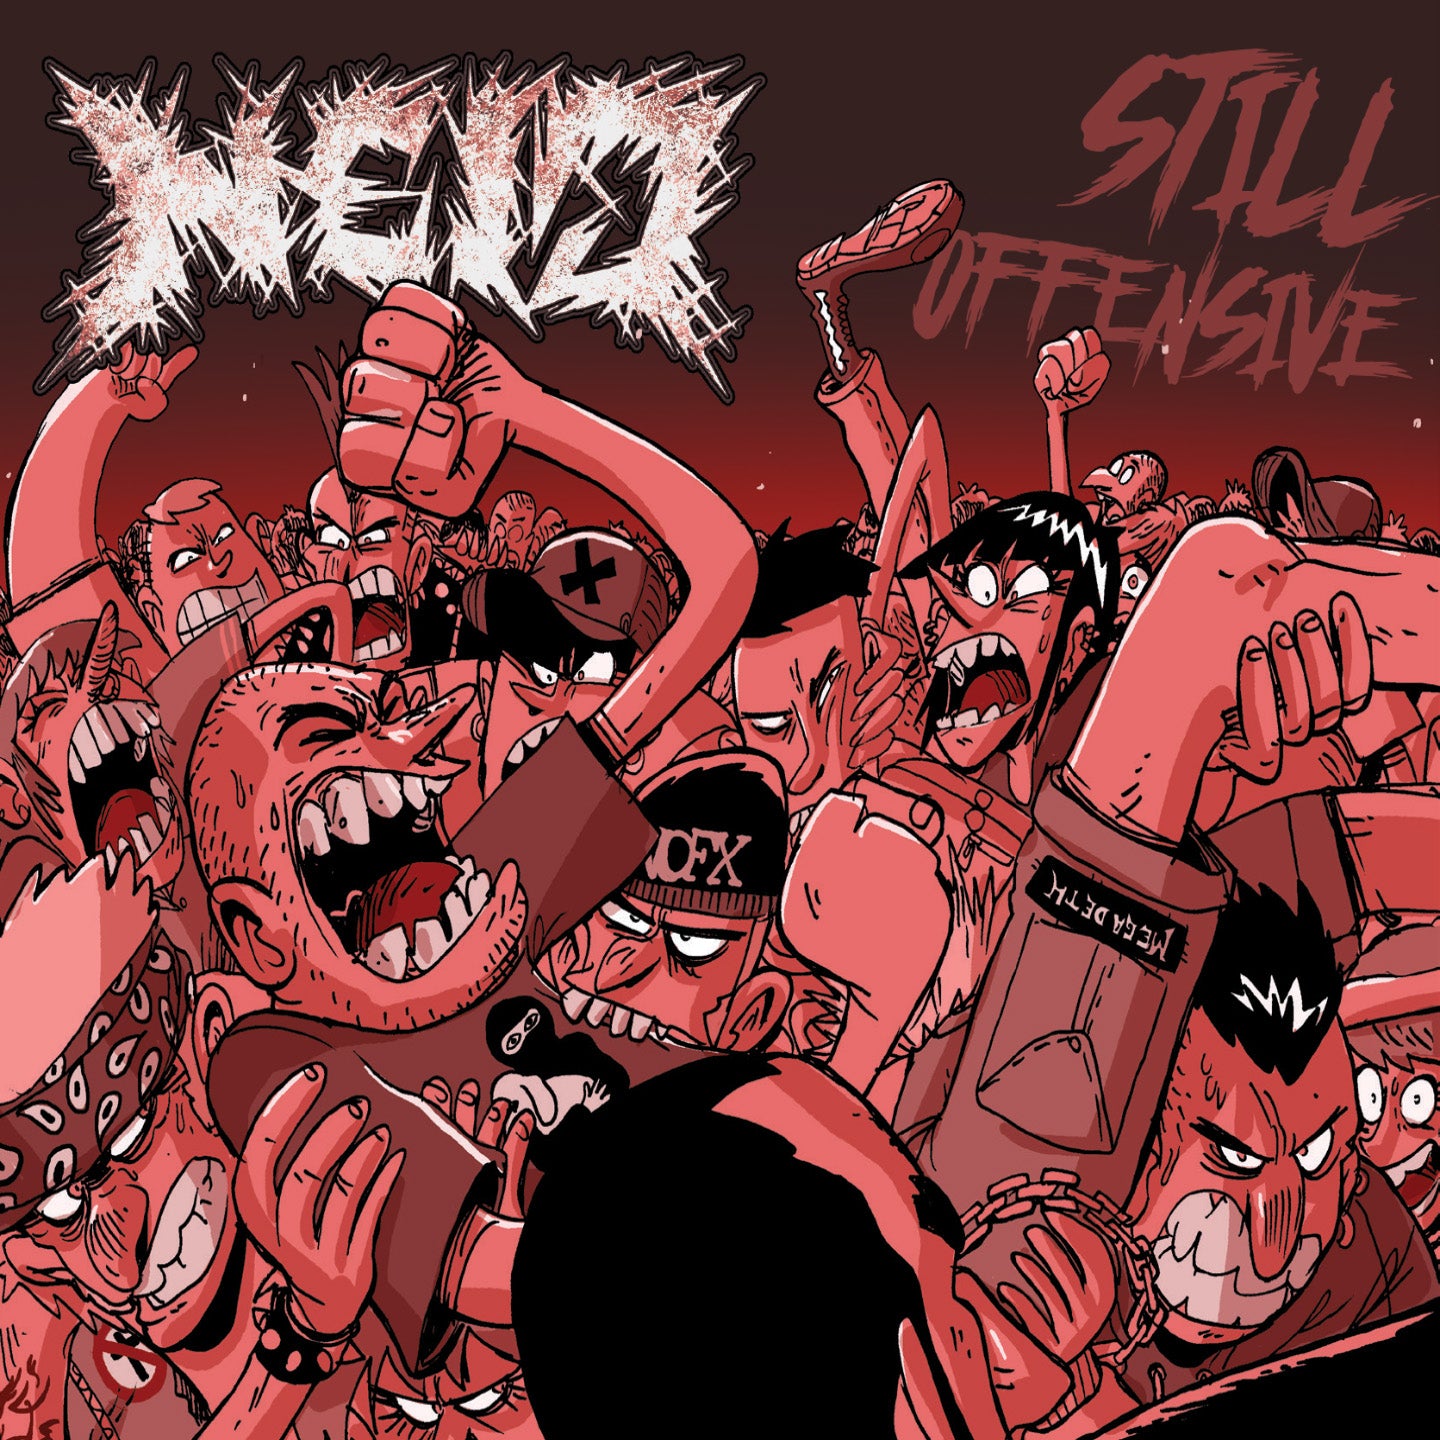 Neid "Still Offensive" digital album